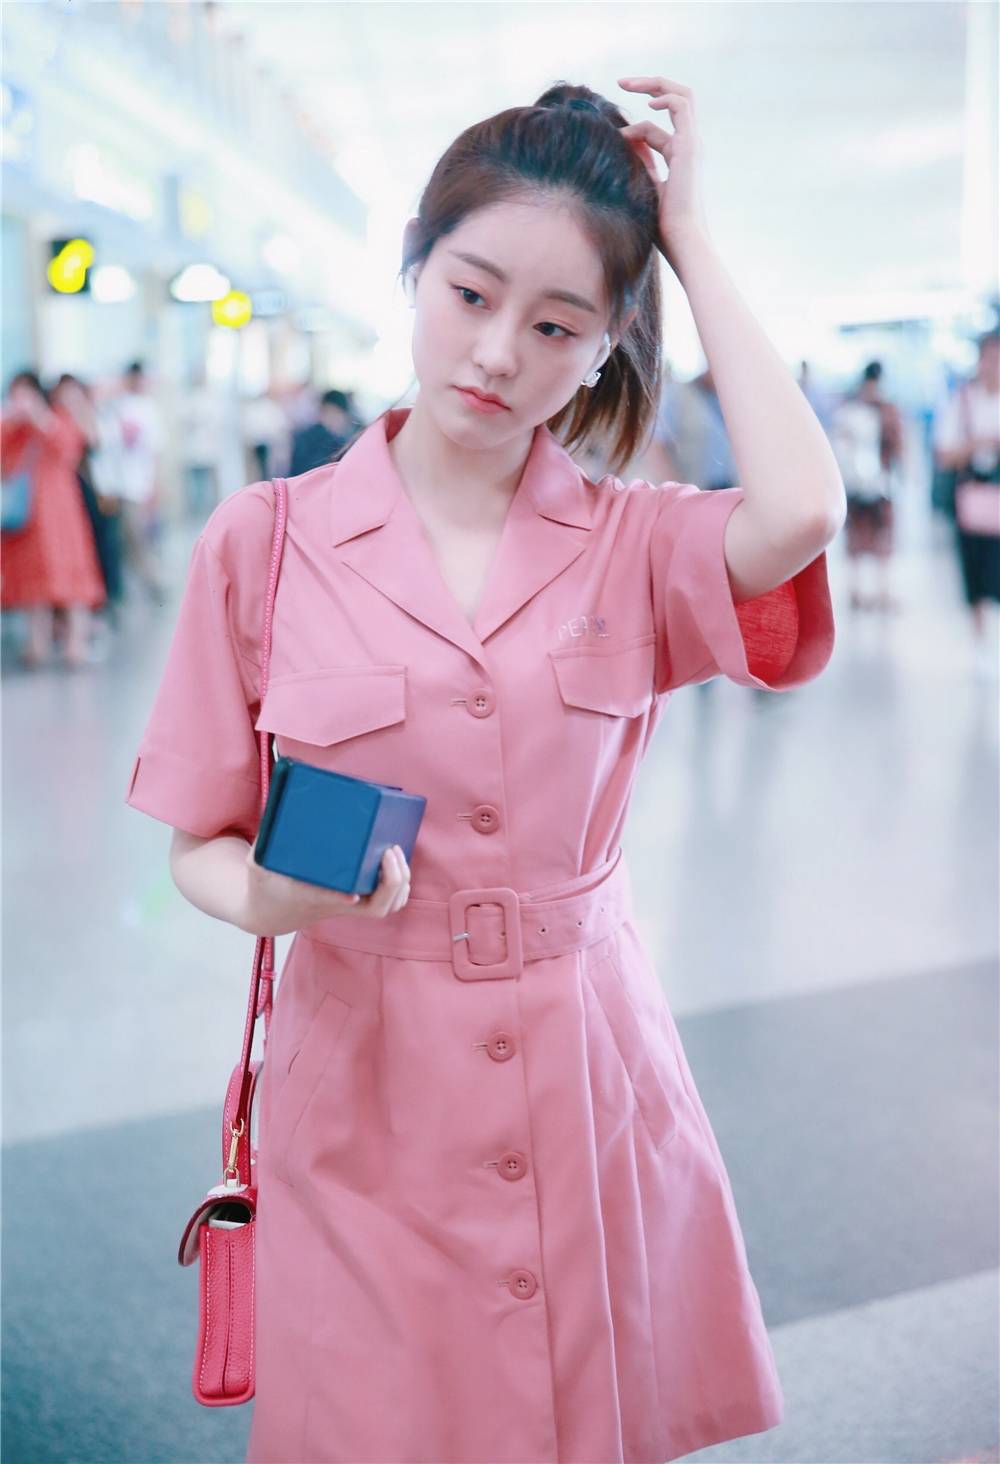 近日,祝绪丹被曝恋情后现身机场,只见她身穿一件桃粉色的西装裙,整个